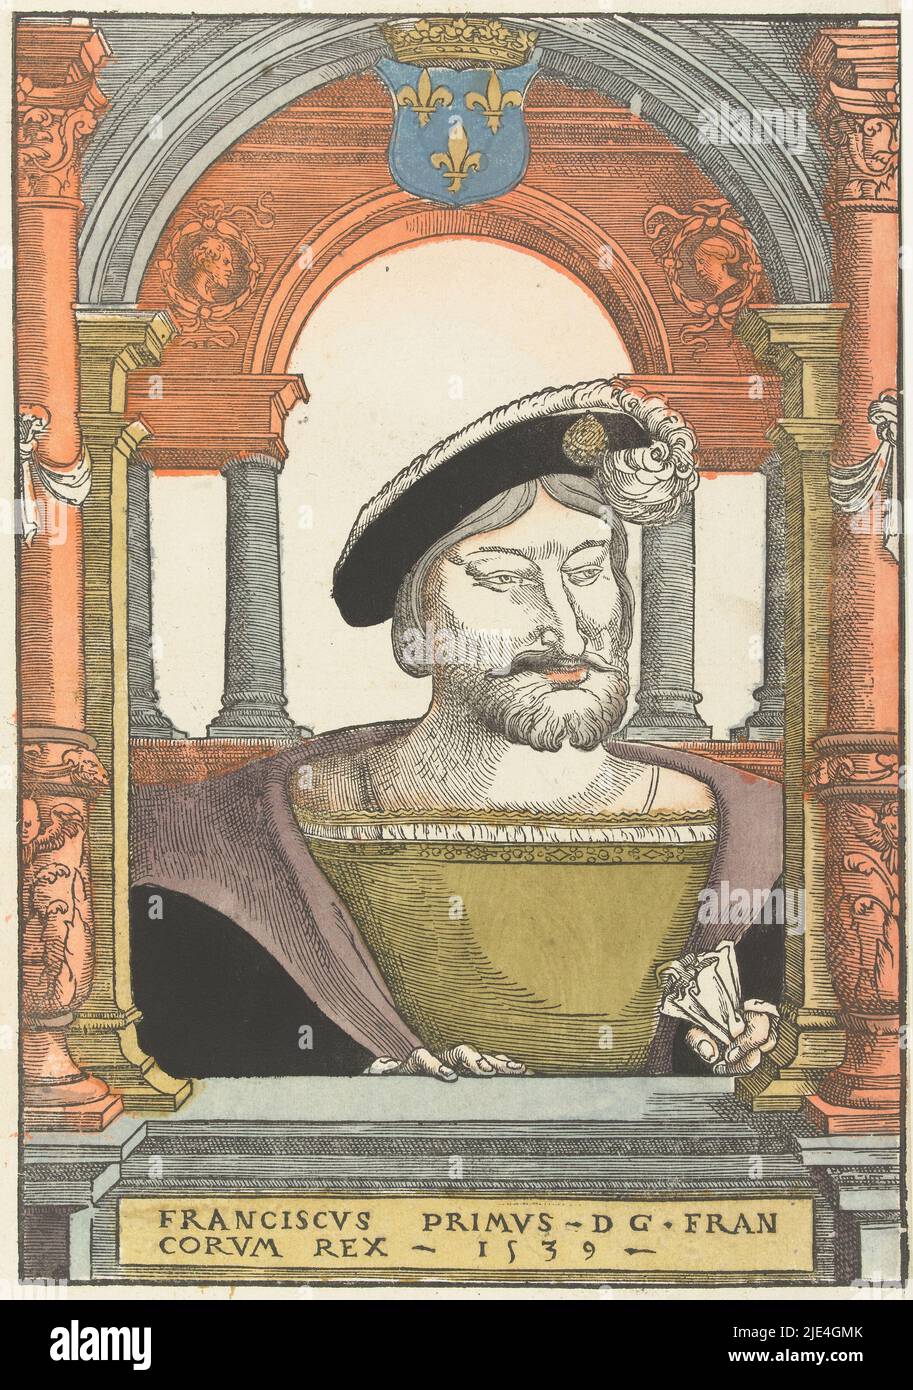 Portrait de François I de France, Pieter Coecke van Aelst (I) (cercle de), 1539, Francis I, roi de France, pectoral derrière le seuil de la fenêtre, dans deux arches l'une derrière l'autre. En haut au centre, le blason français couronné, sous le parapet en lettres sculptées, le titre et l'année. Pendentif de portrait d'Eleanor de France., imprimerie: Pieter Coecke van Aelst (I), (cercle de), Hans Liefrinck (I), (éventuellement), imprimeur: Hans Liefrinck (I), Bas pays, imprimeur: Anvers, 1539, papier, h 342 mm × l 238 mm, h 405 mm × l 271 mm Banque D'Images